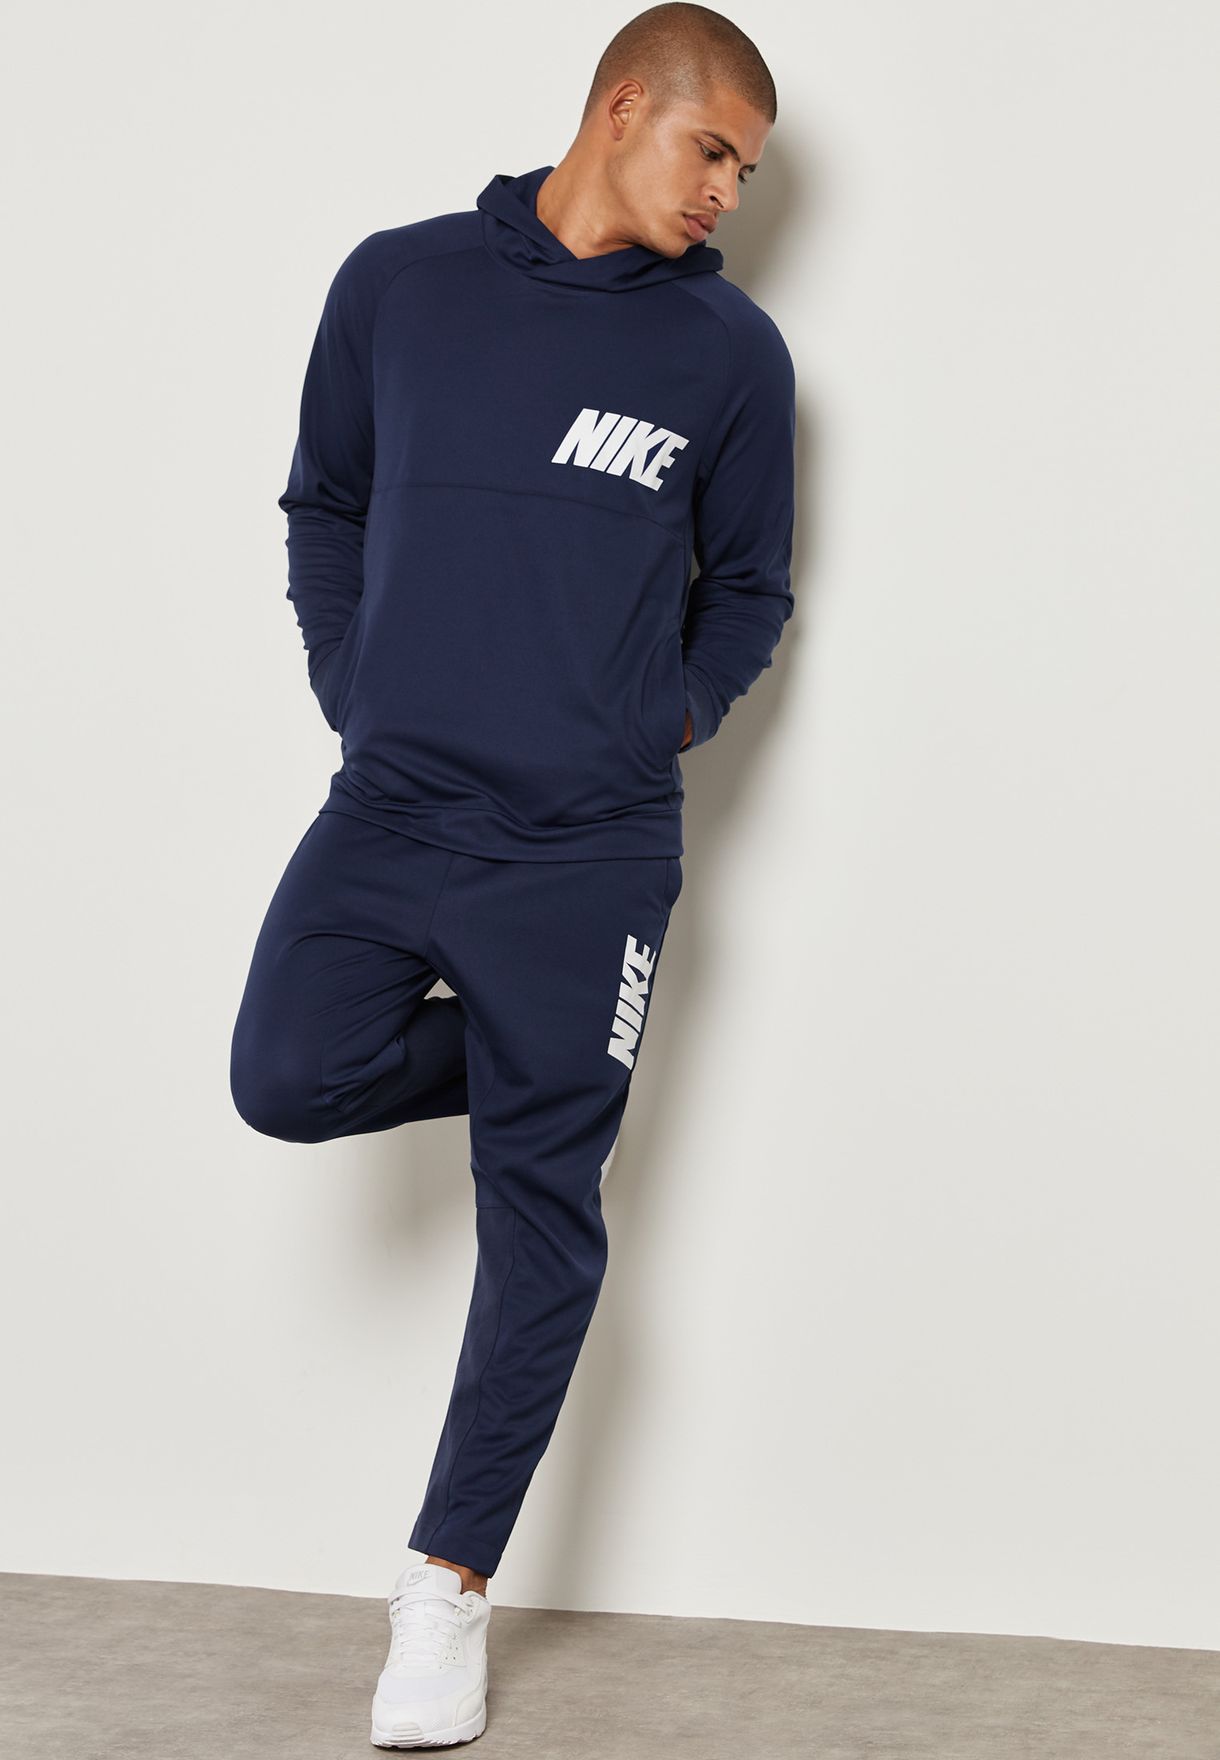 Buy Nike navy AV15 Tracksuit for Men in 